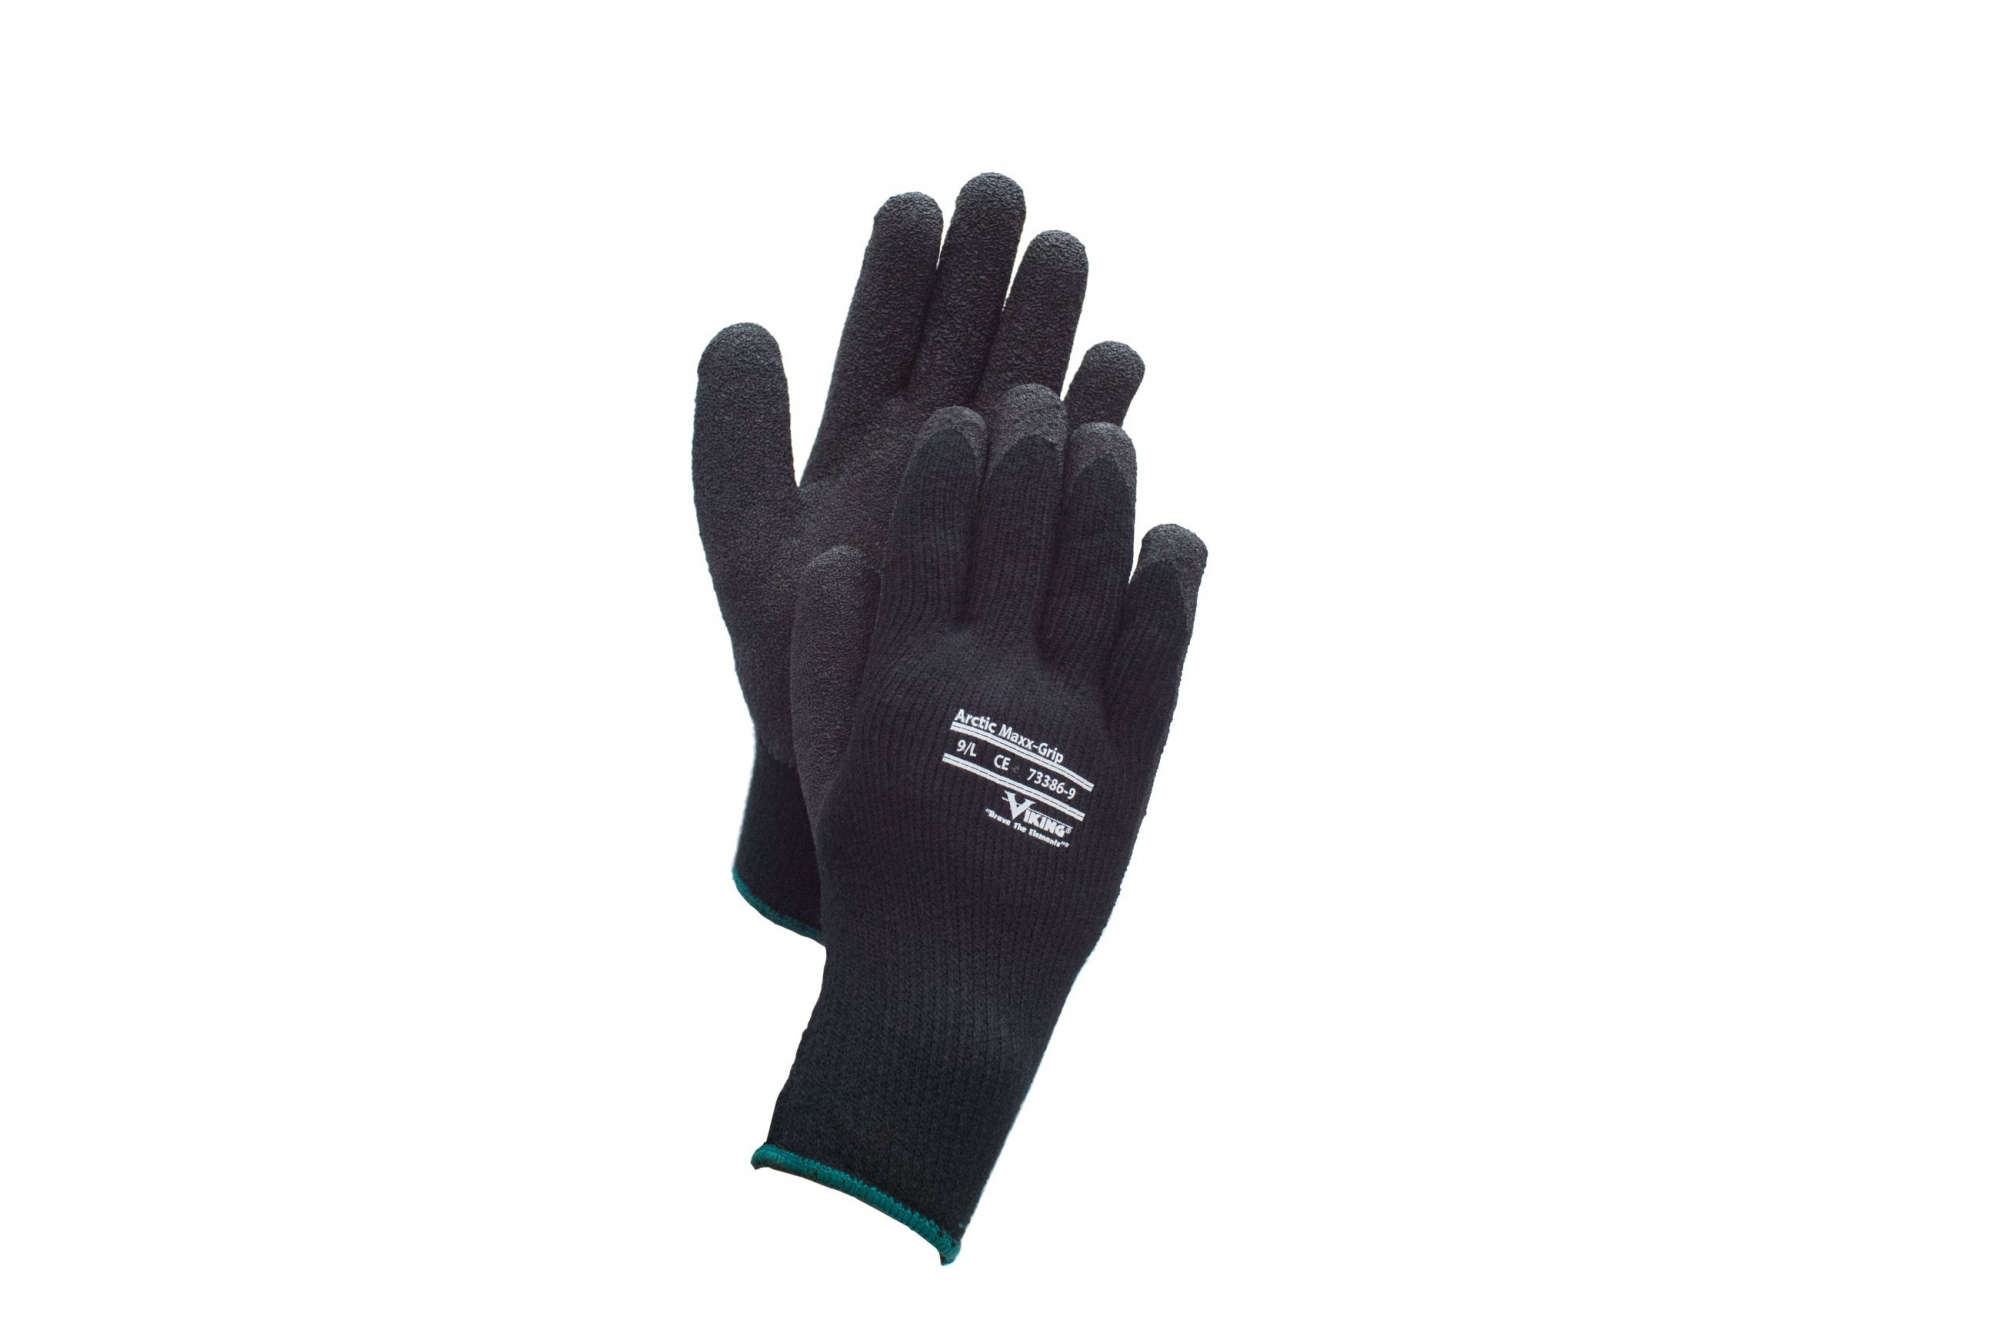 UKHP tissu Nitrile Coated Dur jardinage bricolage gants de travail pour homme XL 2 paires 